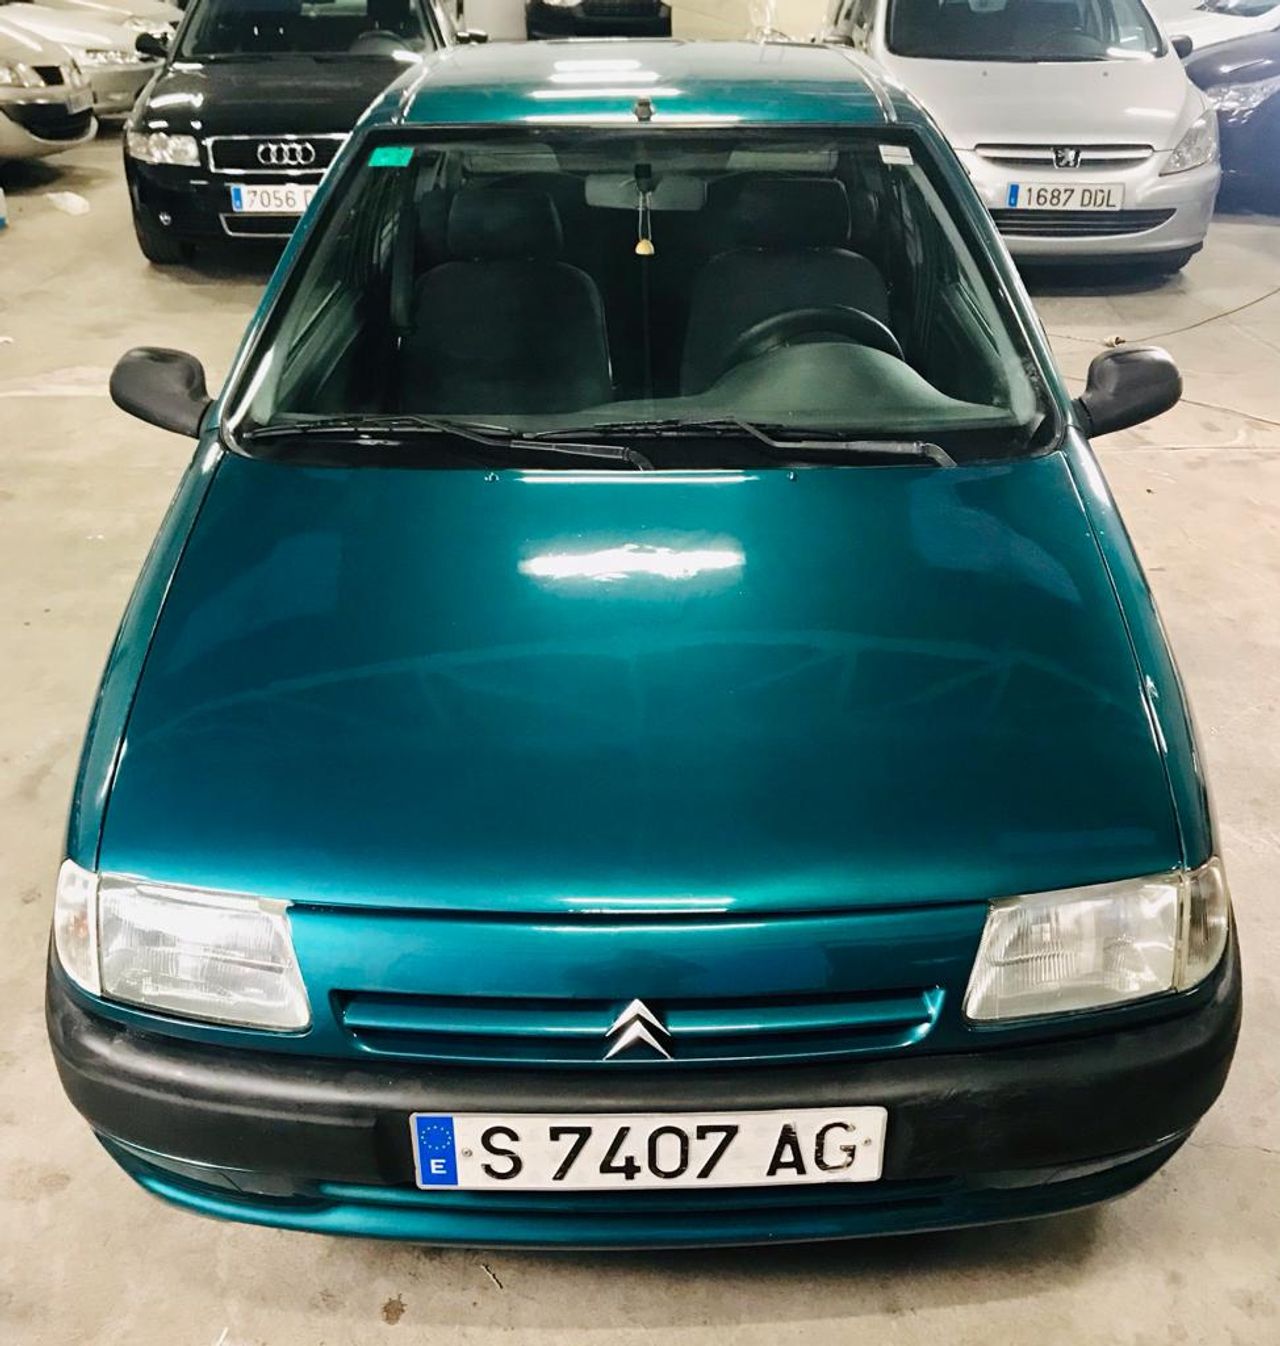 Citroën Saxo ocasión segunda mano 1996 Diésel por 1.800€ en Málaga